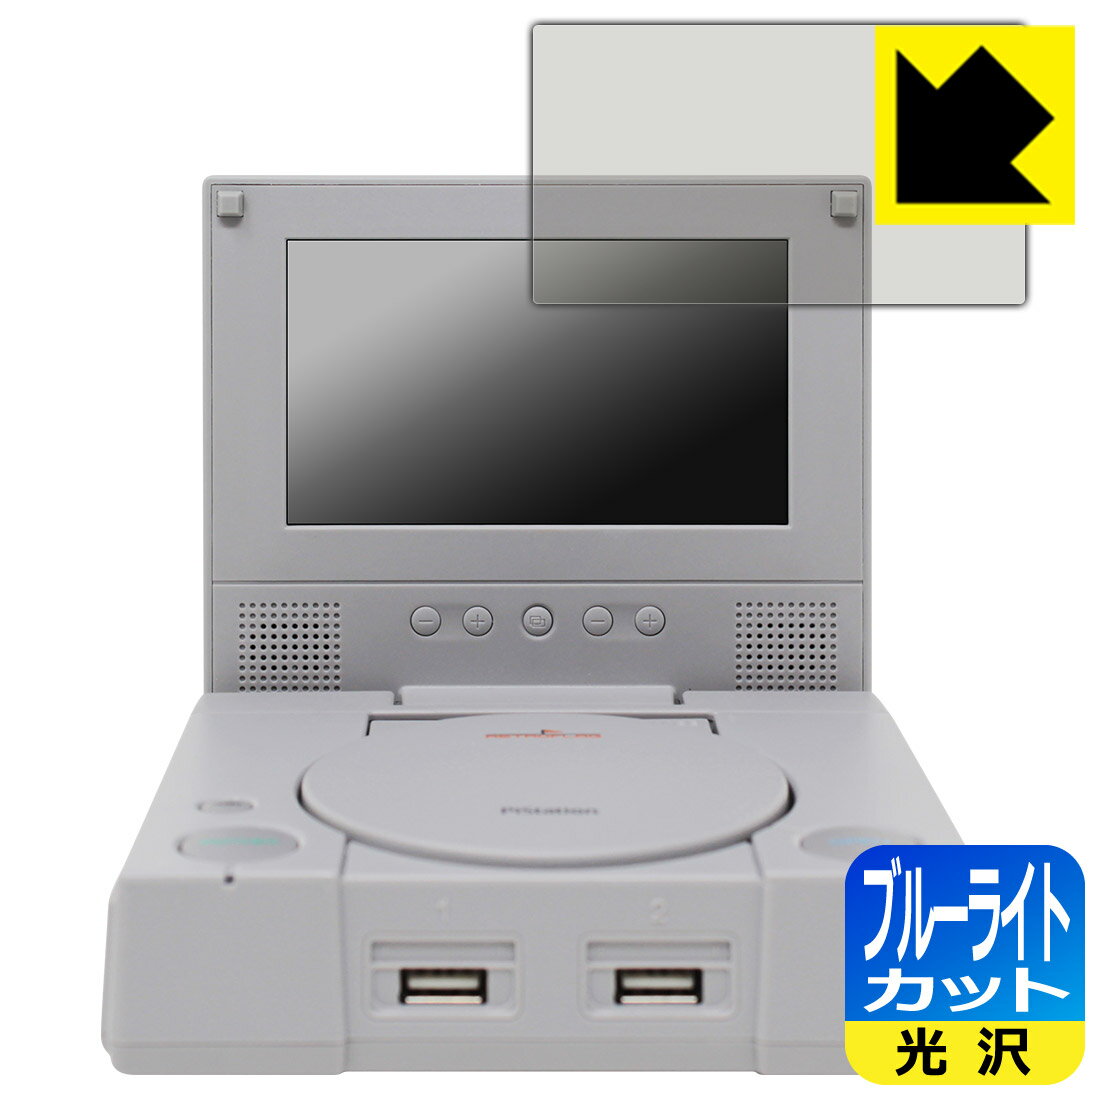 RETROFLAG PiStation Case + LCD 用 ブルーライトカット【光沢】保護フィルム (画面用) 日本製 自社製造直販